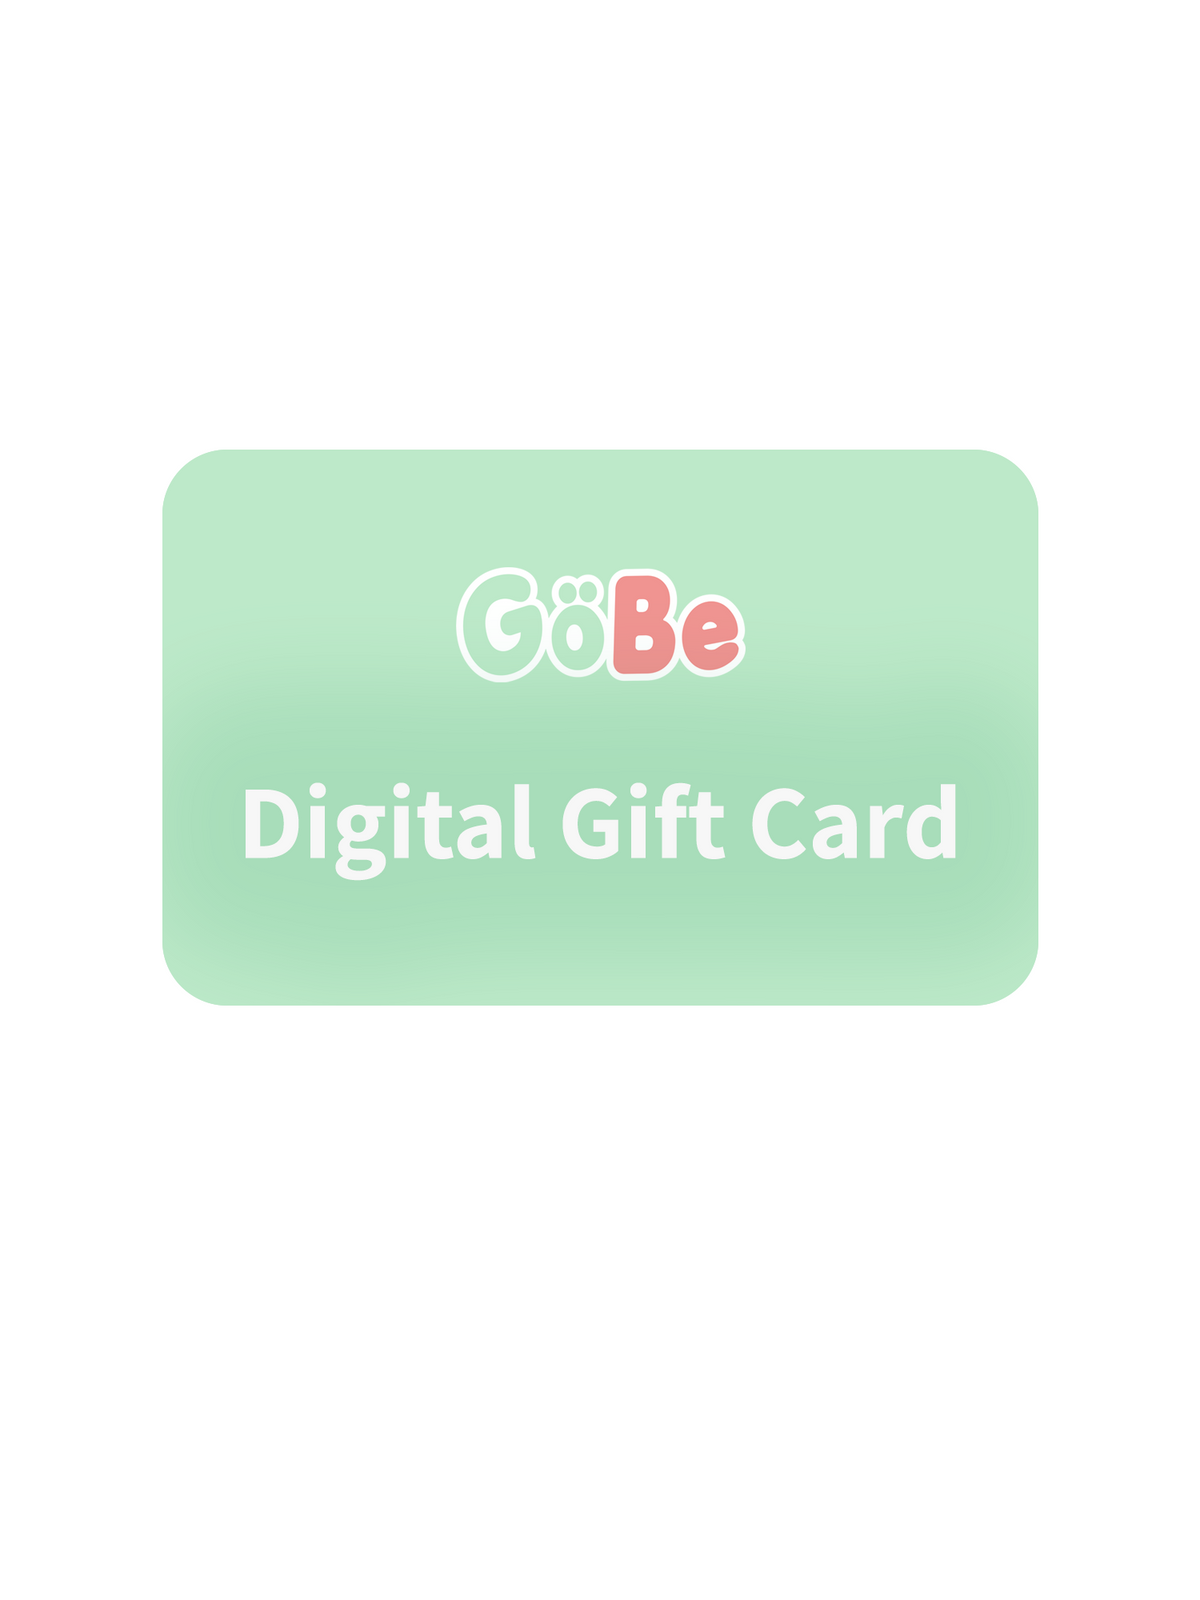 Digital Gift Card - GoBe Kids